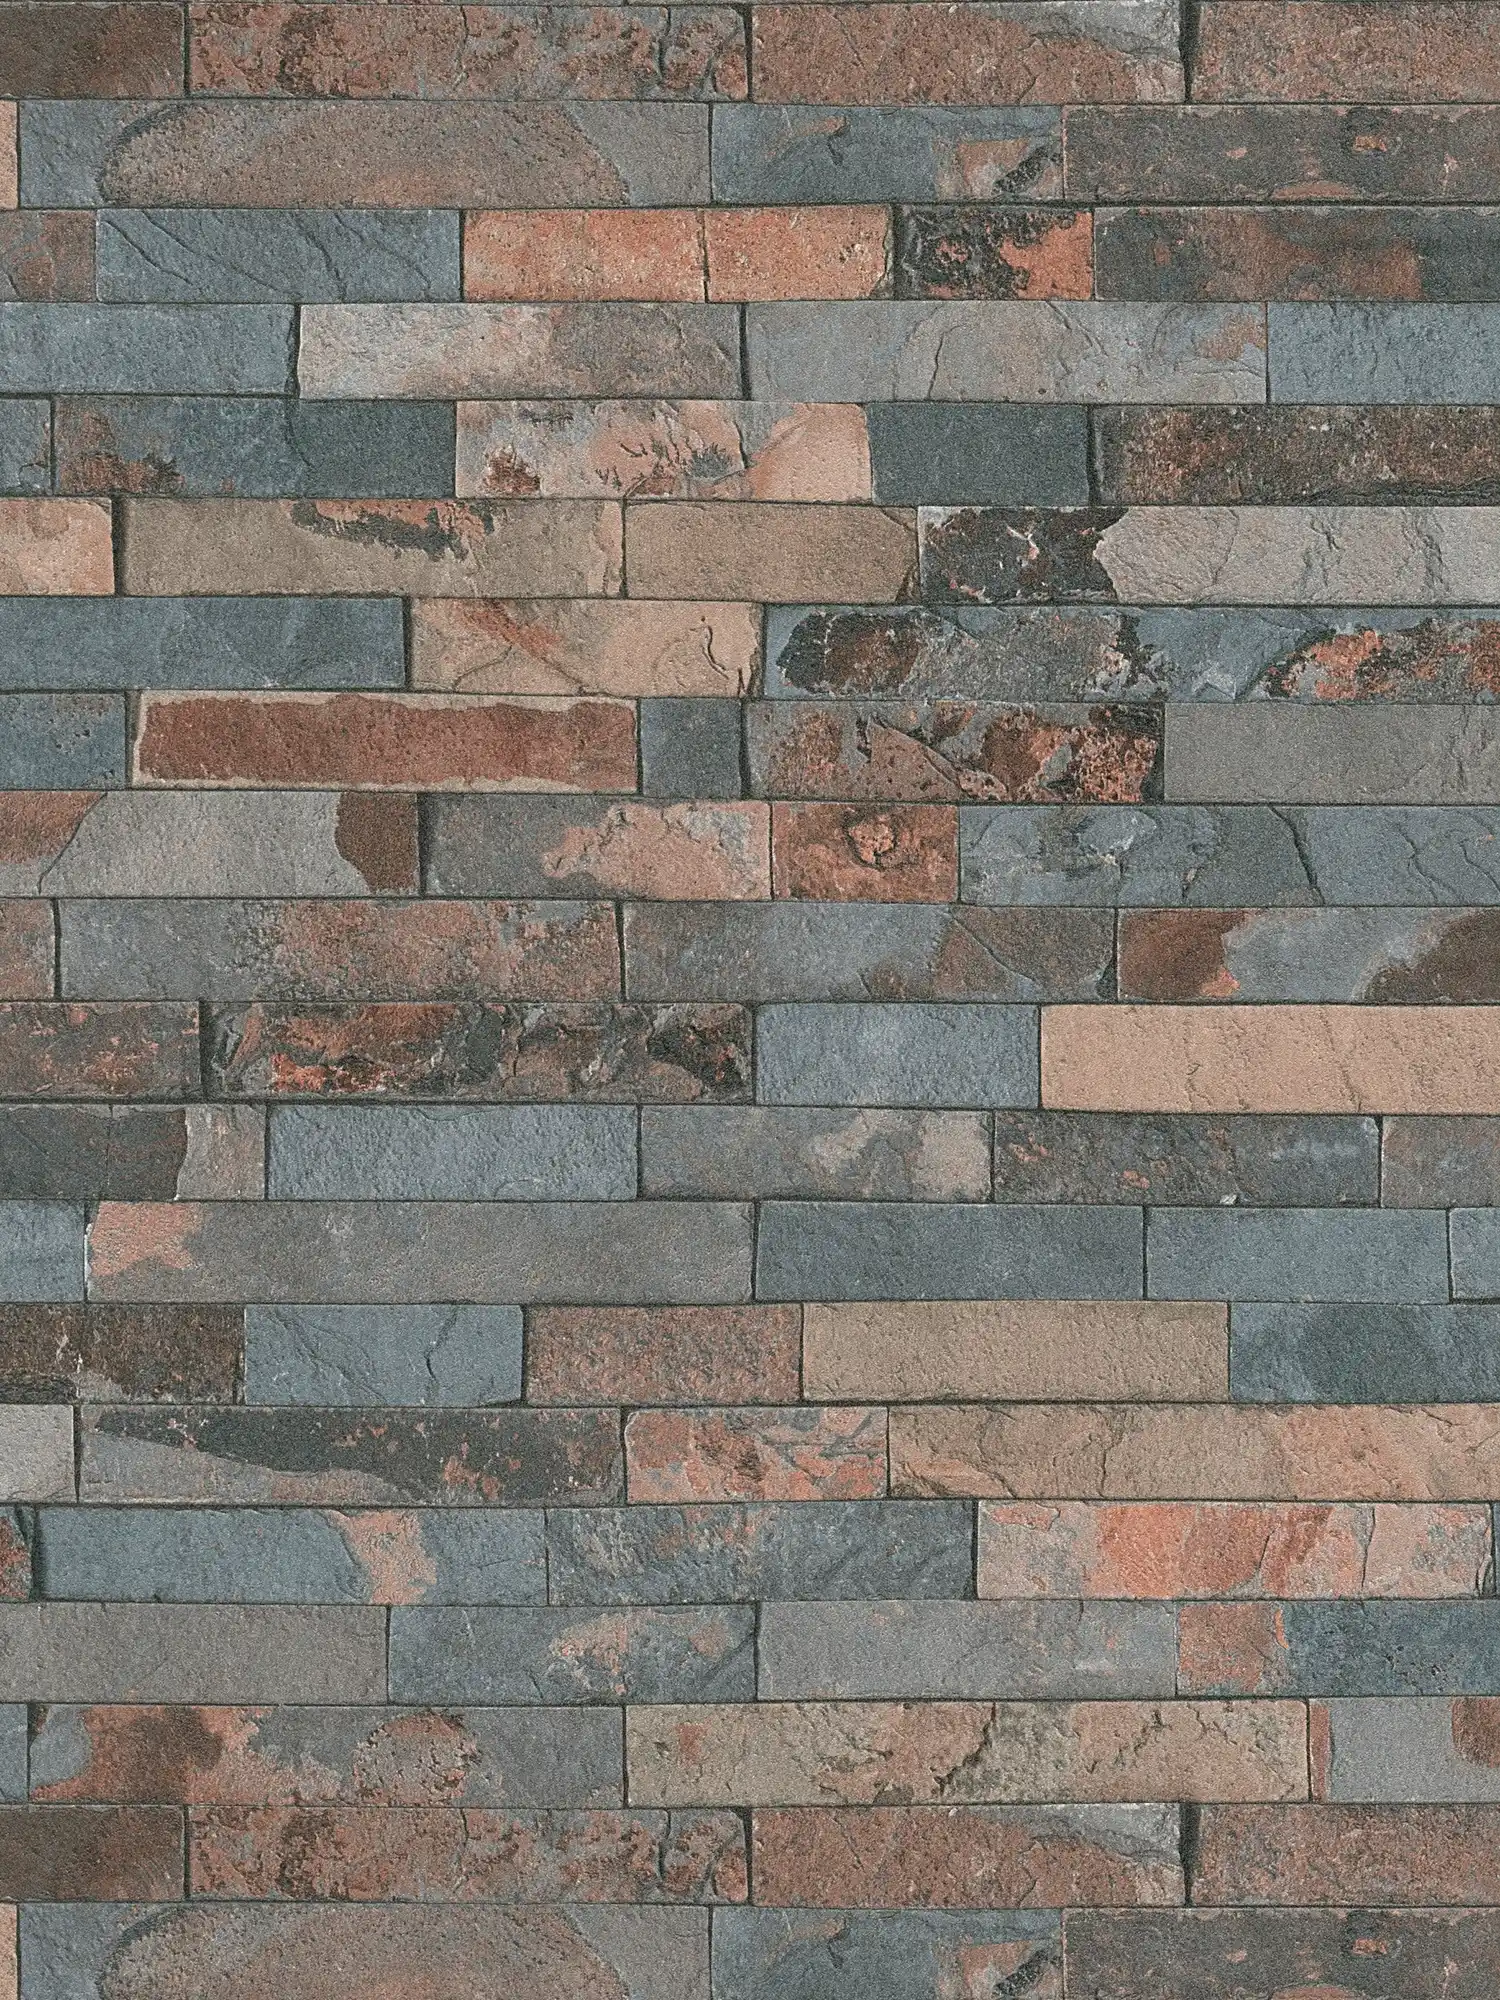 Tapete Steinoptik mit dunkler Mauer aus Natursteinen – Grau, Braun, Schwarz
